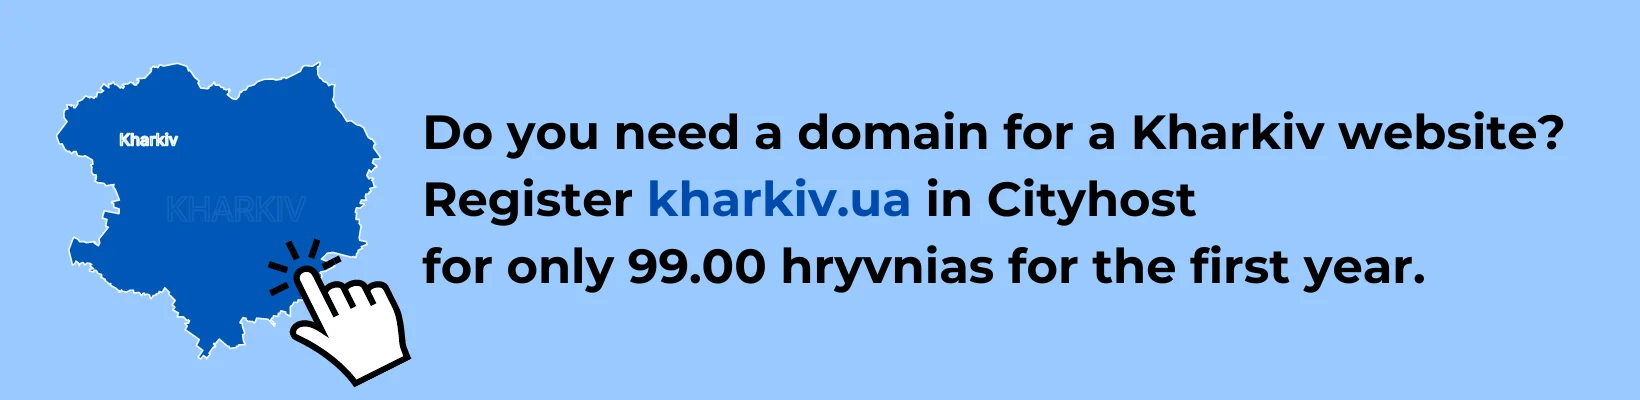 Register a domain for the Kharkiv site online